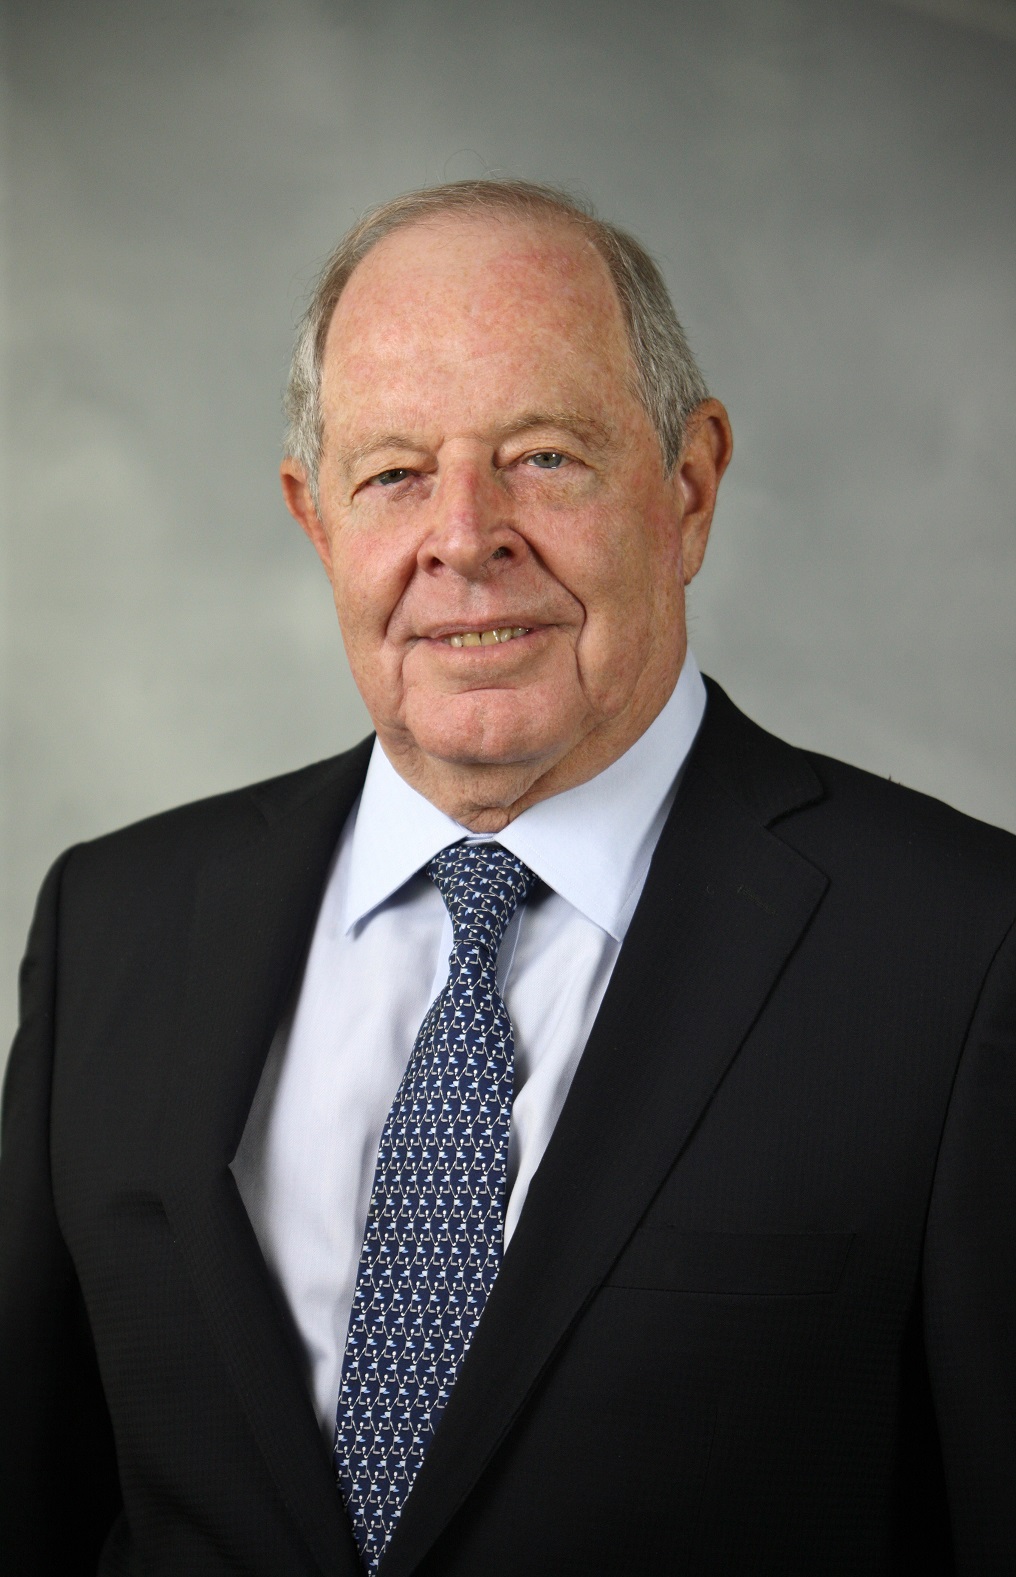 Mr. Michael L. Faltischek